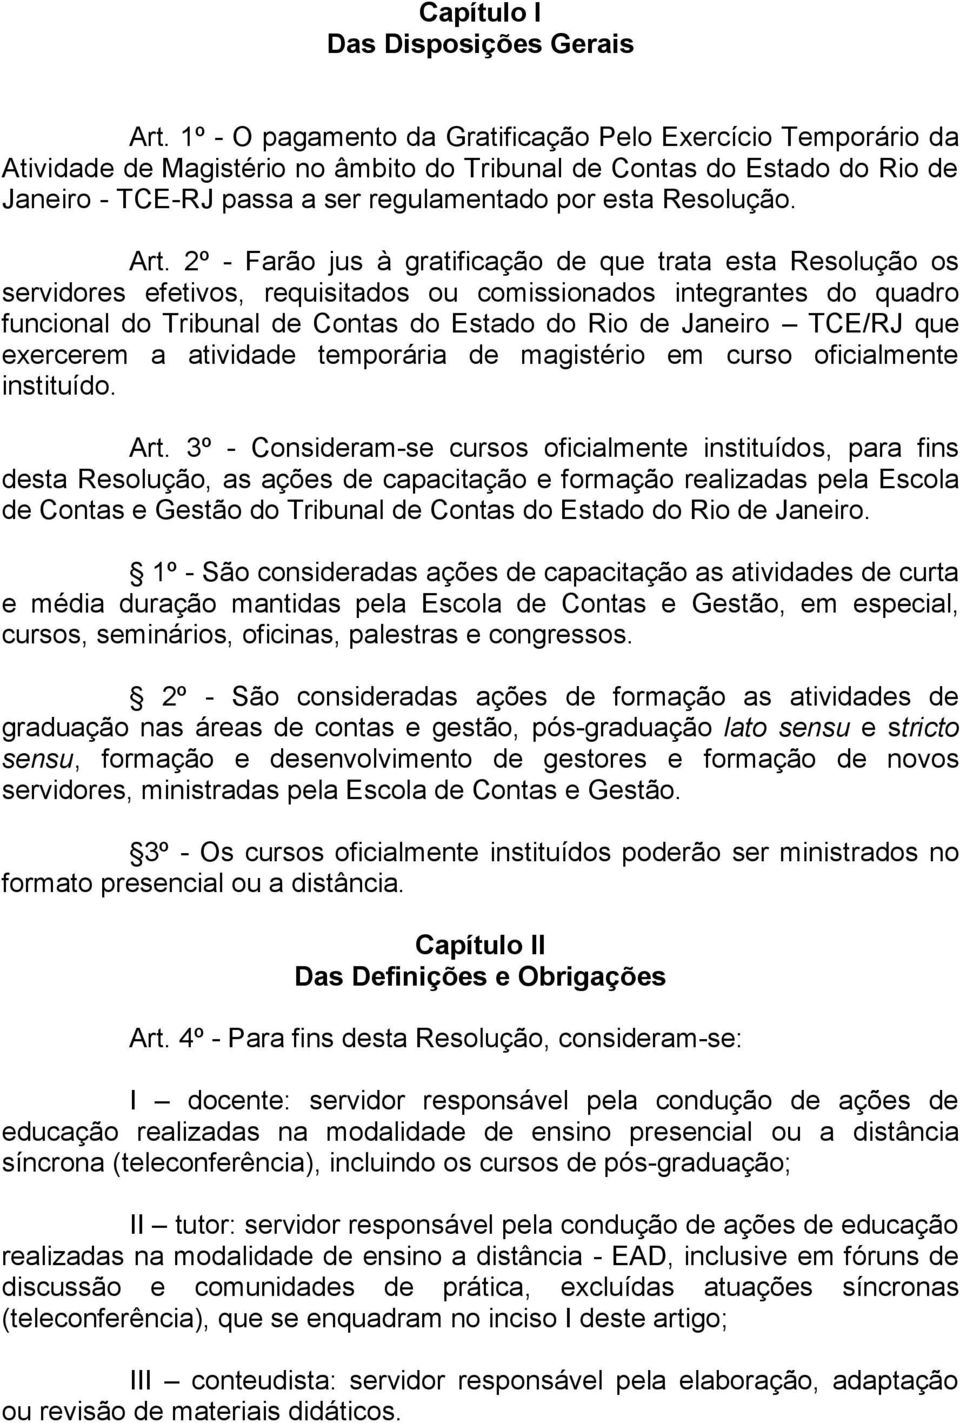 Art. 2º - Farão jus à gratificação de que trata esta Resolução os servidores efetivos, requisitados ou comissionados integrantes do quadro funcional do Tribunal de Contas do Estado do Rio de Janeiro